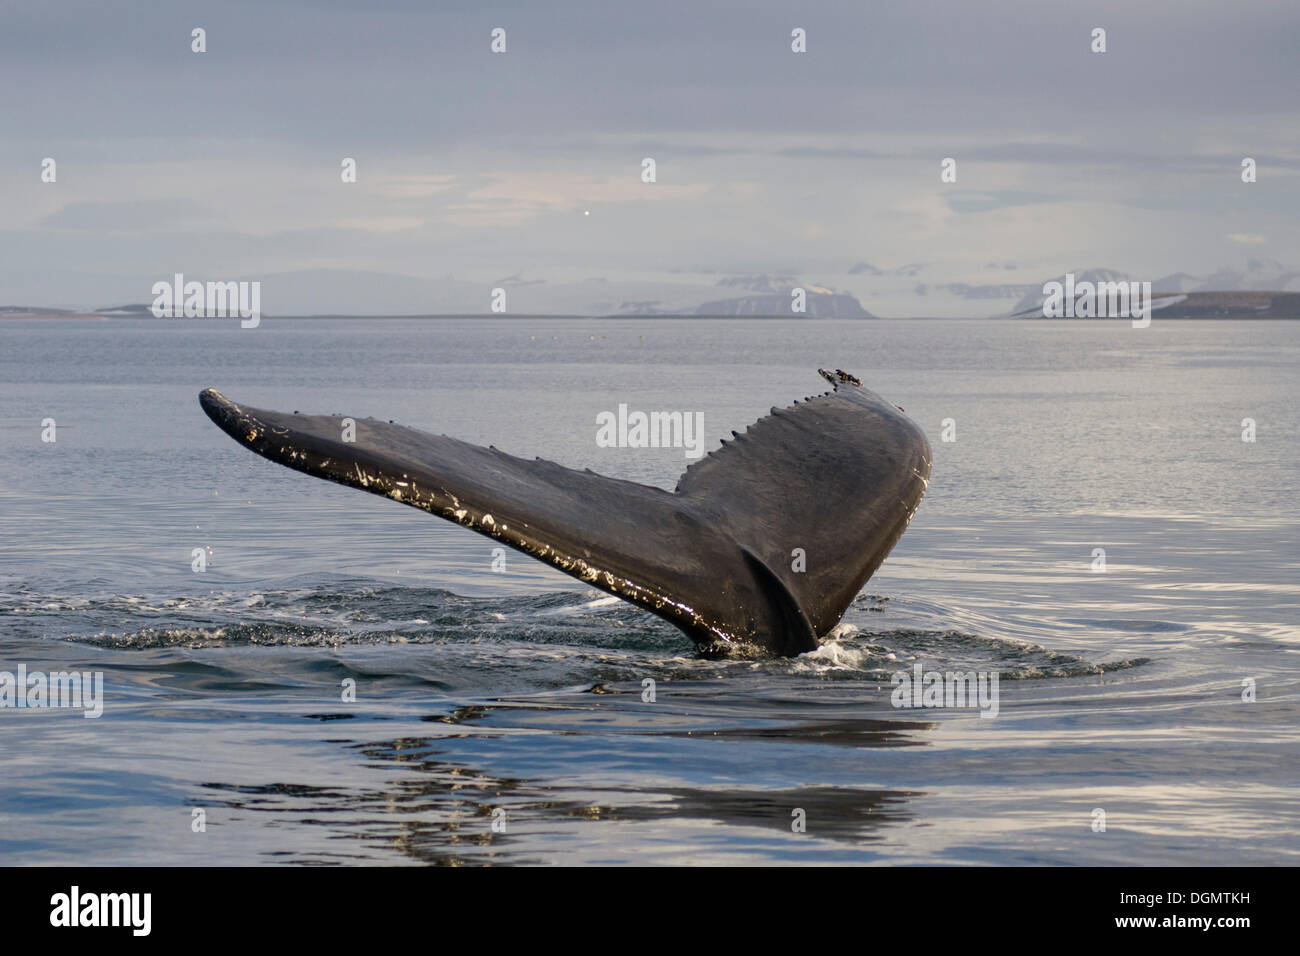 Fluke de buceo una ballena jorobada (Megaptera novaeangliae), Hinlopenstretet Spitsbergen, isla, archipiélago de Svalbard Foto de stock